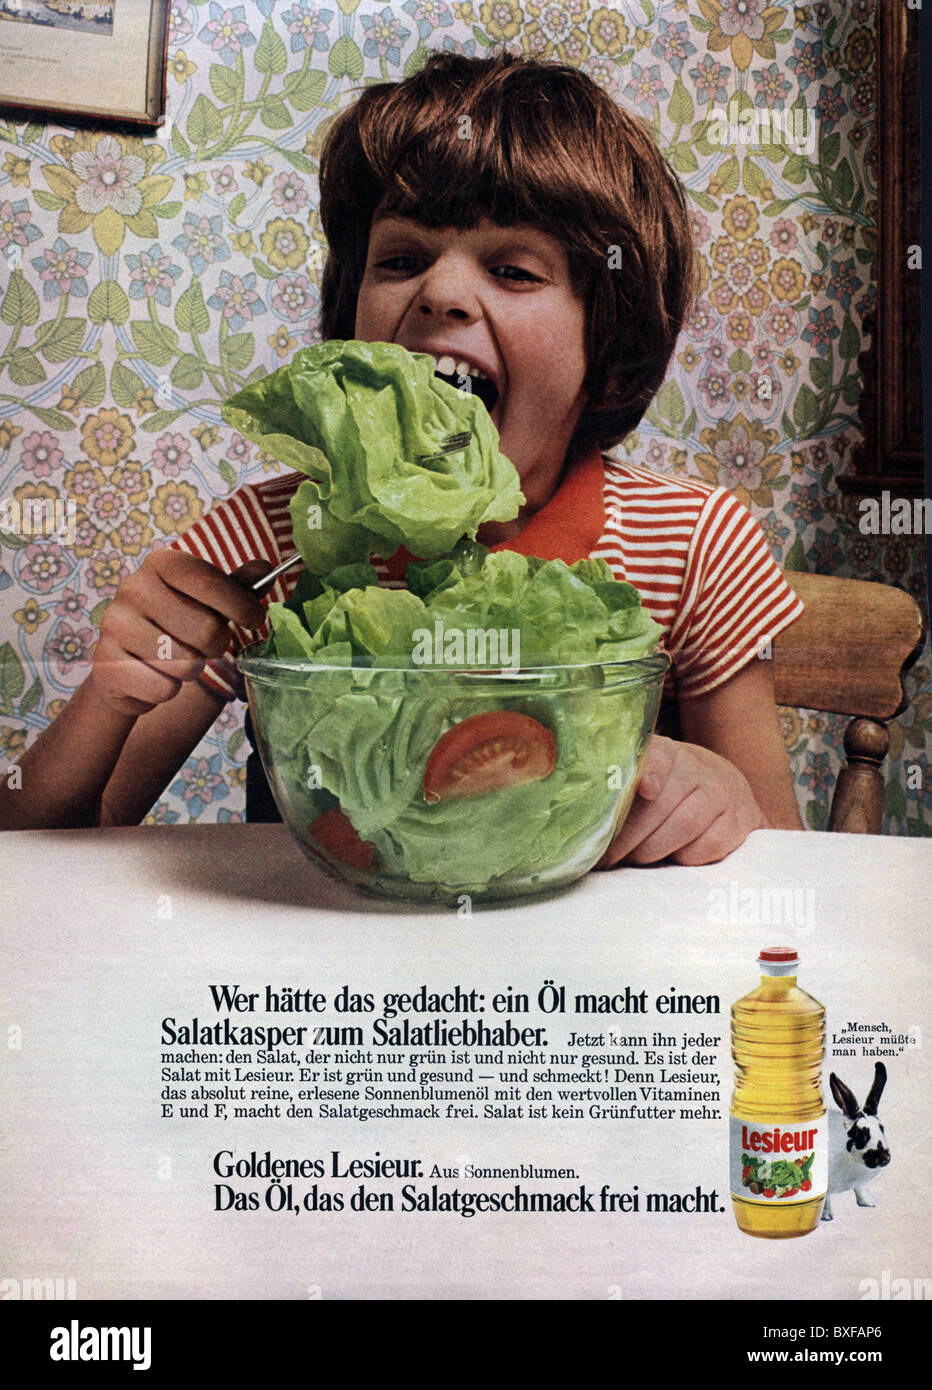 Pubblicità, cibo, pubblicità per l'olio di girasole di Lesieur, dalla rivista 'Hoer zu', n° 23, 11.6.1971, Germania, diritti aggiuntivi-clearences-non disponibile Foto Stock